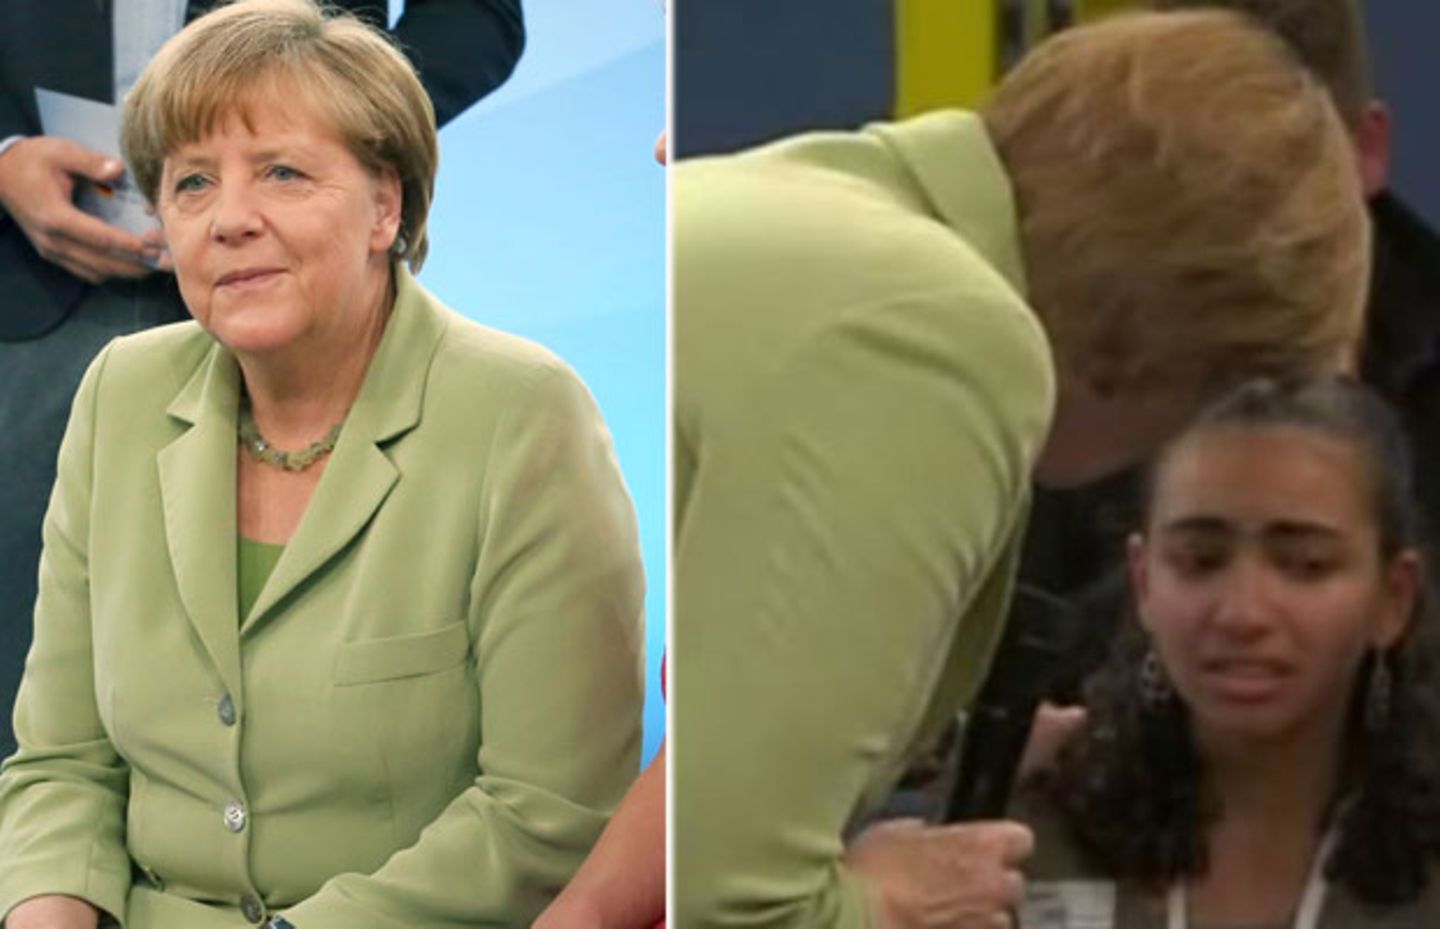 Abschiebung statt Zukunft: Merkel versucht, weinendes Mädchen zu trösten